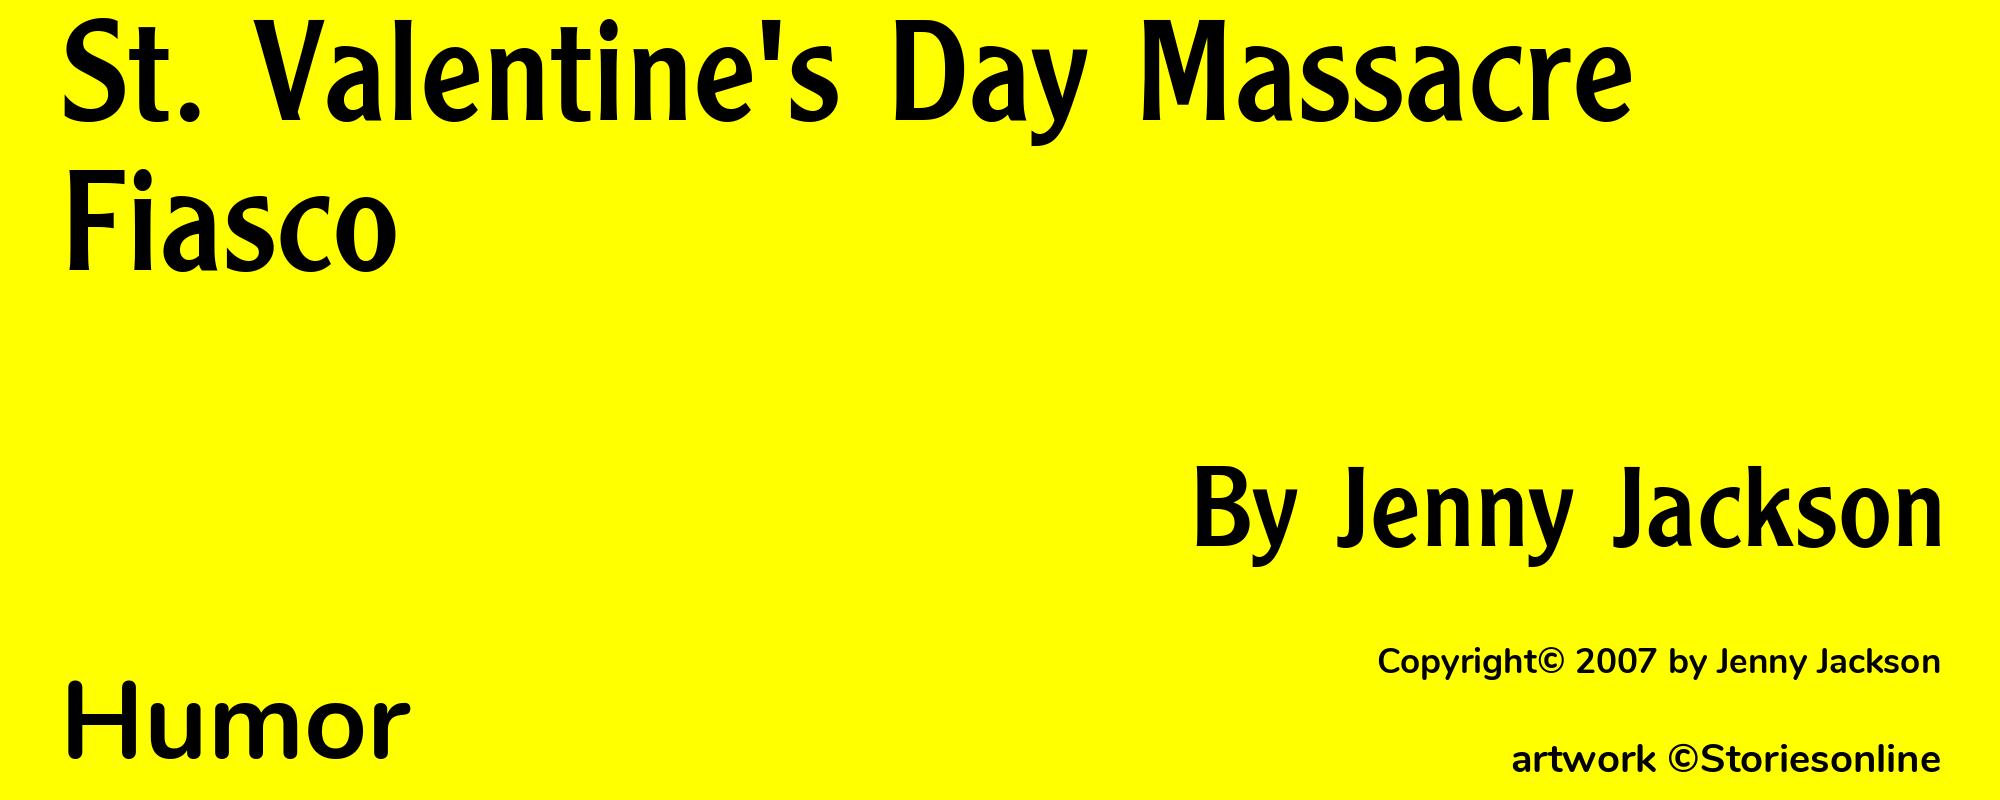 St. Valentine's Day Massacre Fiasco - Cover